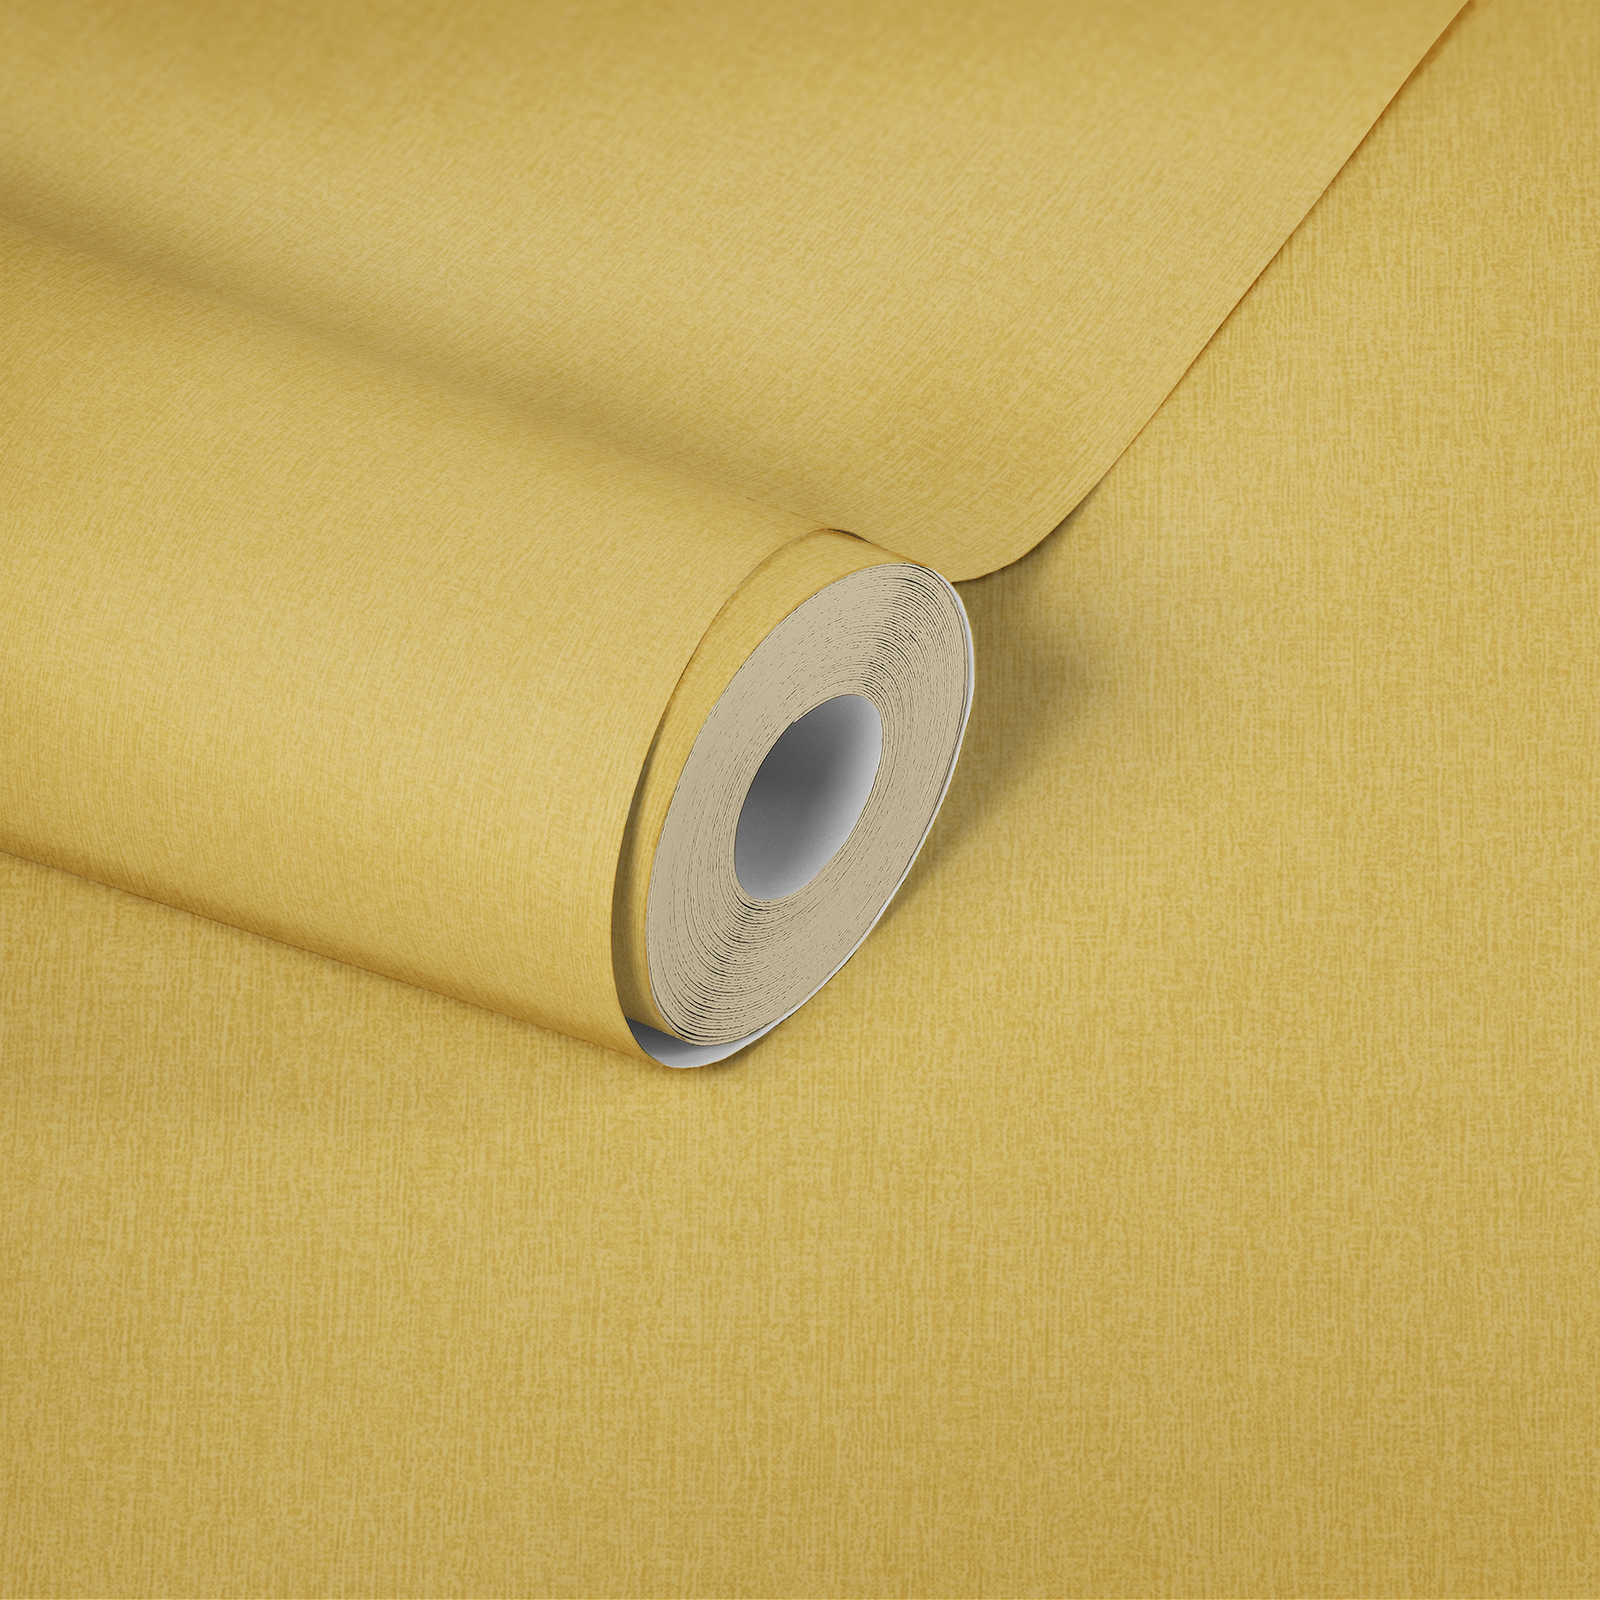             Eenheidsbehang met textiellook, kleur gevlekt - geel
        